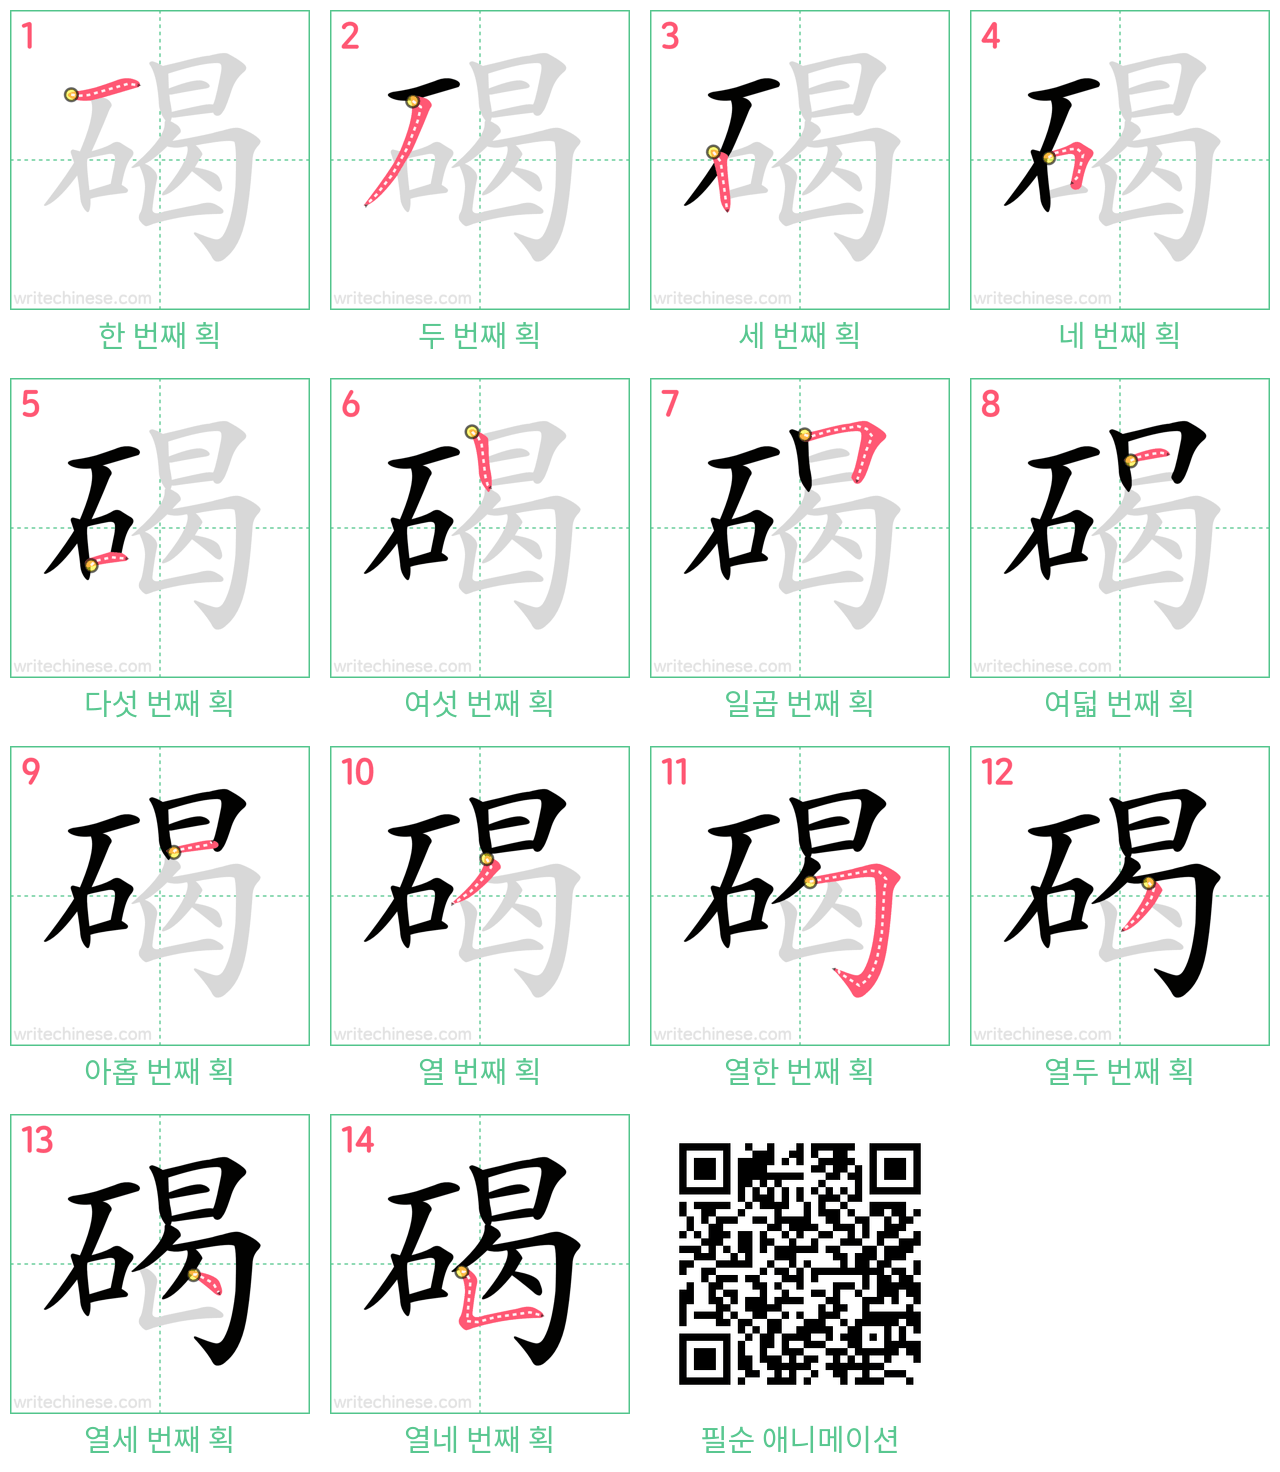 碣 step-by-step stroke order diagrams